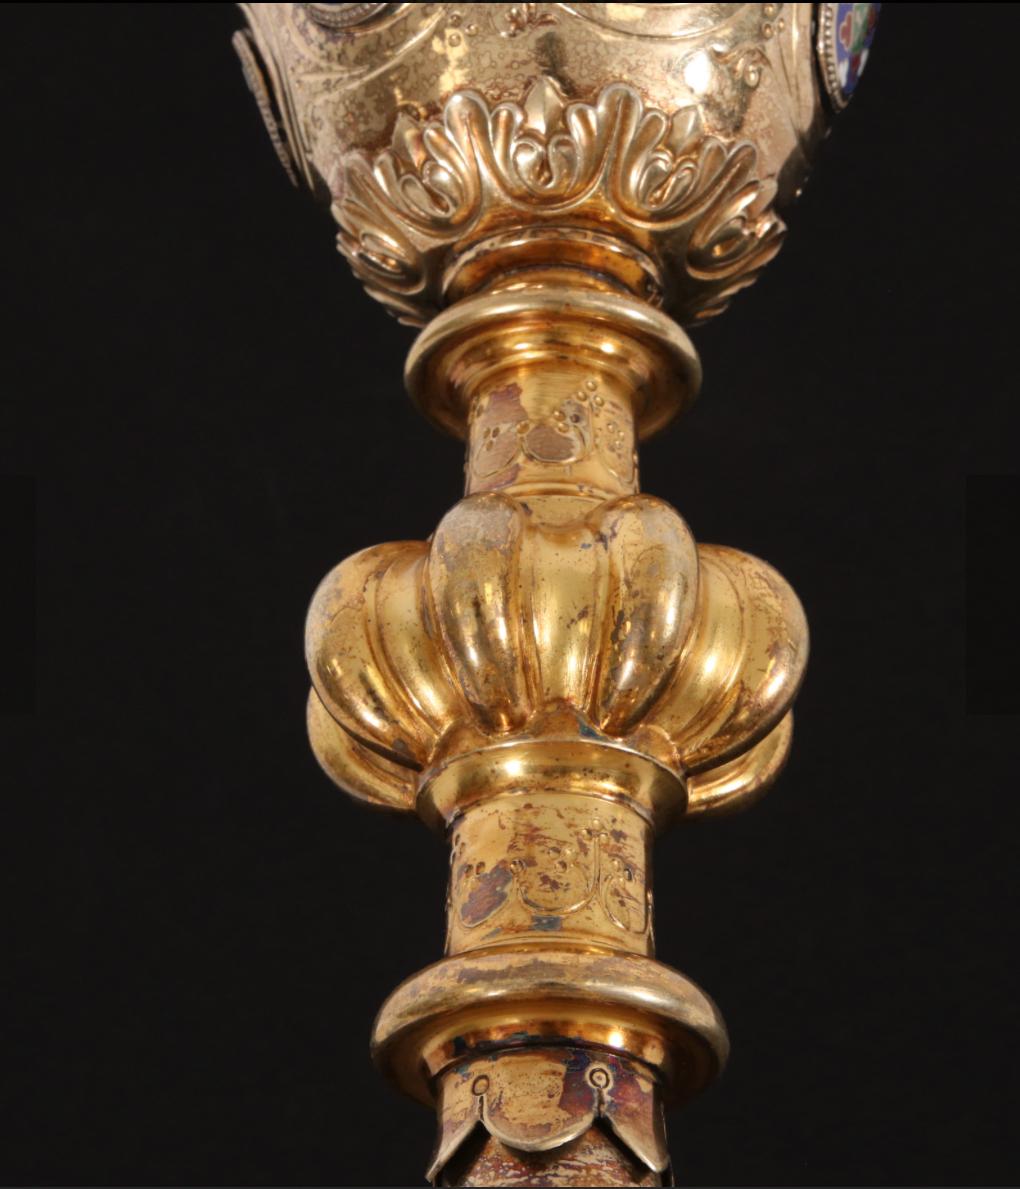 PLACIDE-BENOIT-MARIE POUSSIELGUE-RUSAND (Paris 1824-1889 Paris)

Kelch


Placide Poussielgue-Rusand (1824-1889), war ein Gold- und Silberschmied in Paris. Er ist vor allem für seine liturgischen Objekte bekannt: Kelche, Ziborium, Patens, Monstranzen